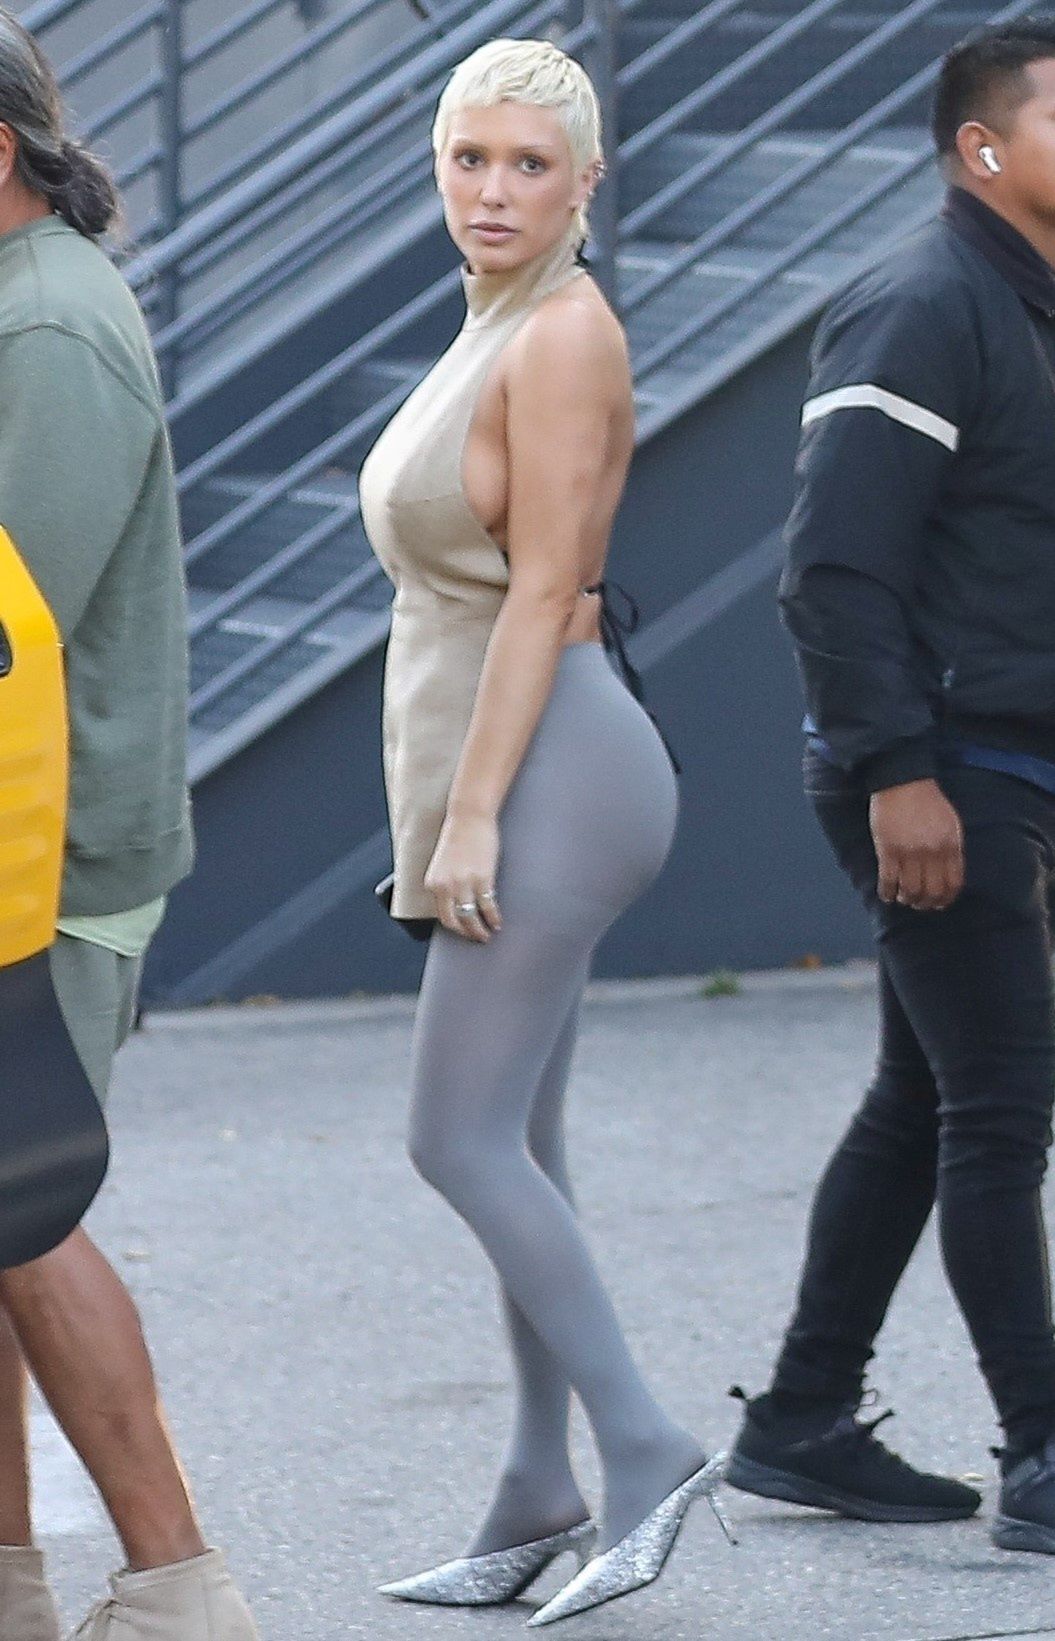 Is Kim Kardashian copying Bianca Censori? Twin outfits